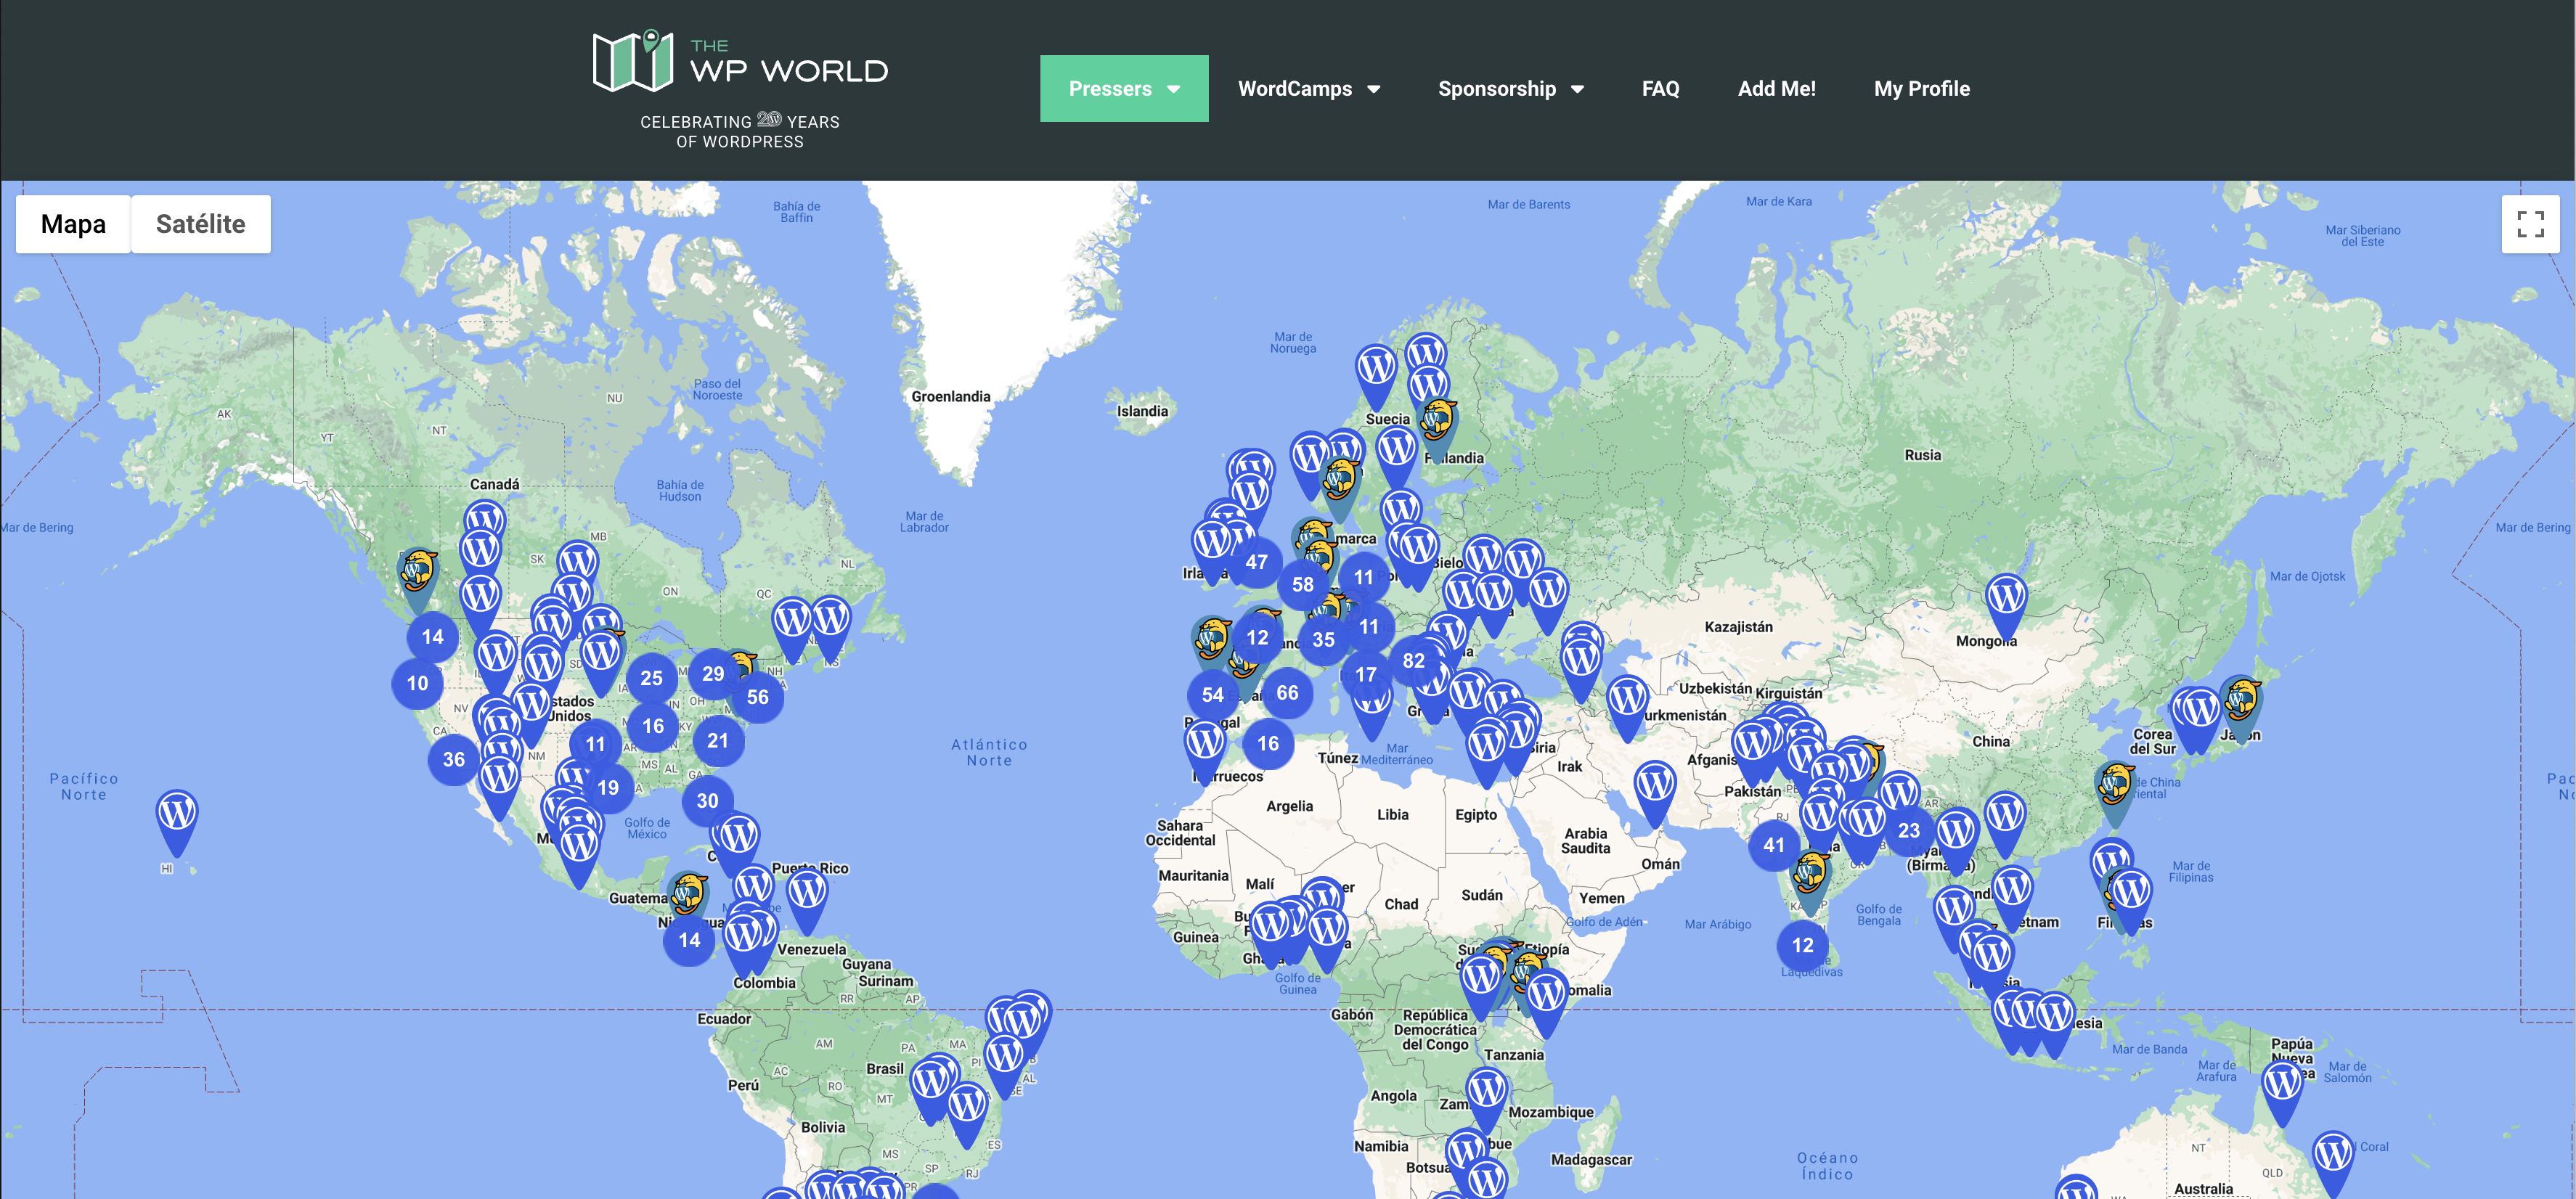 Únete a The WP World y descubre la comunidad de WordPress en tu área